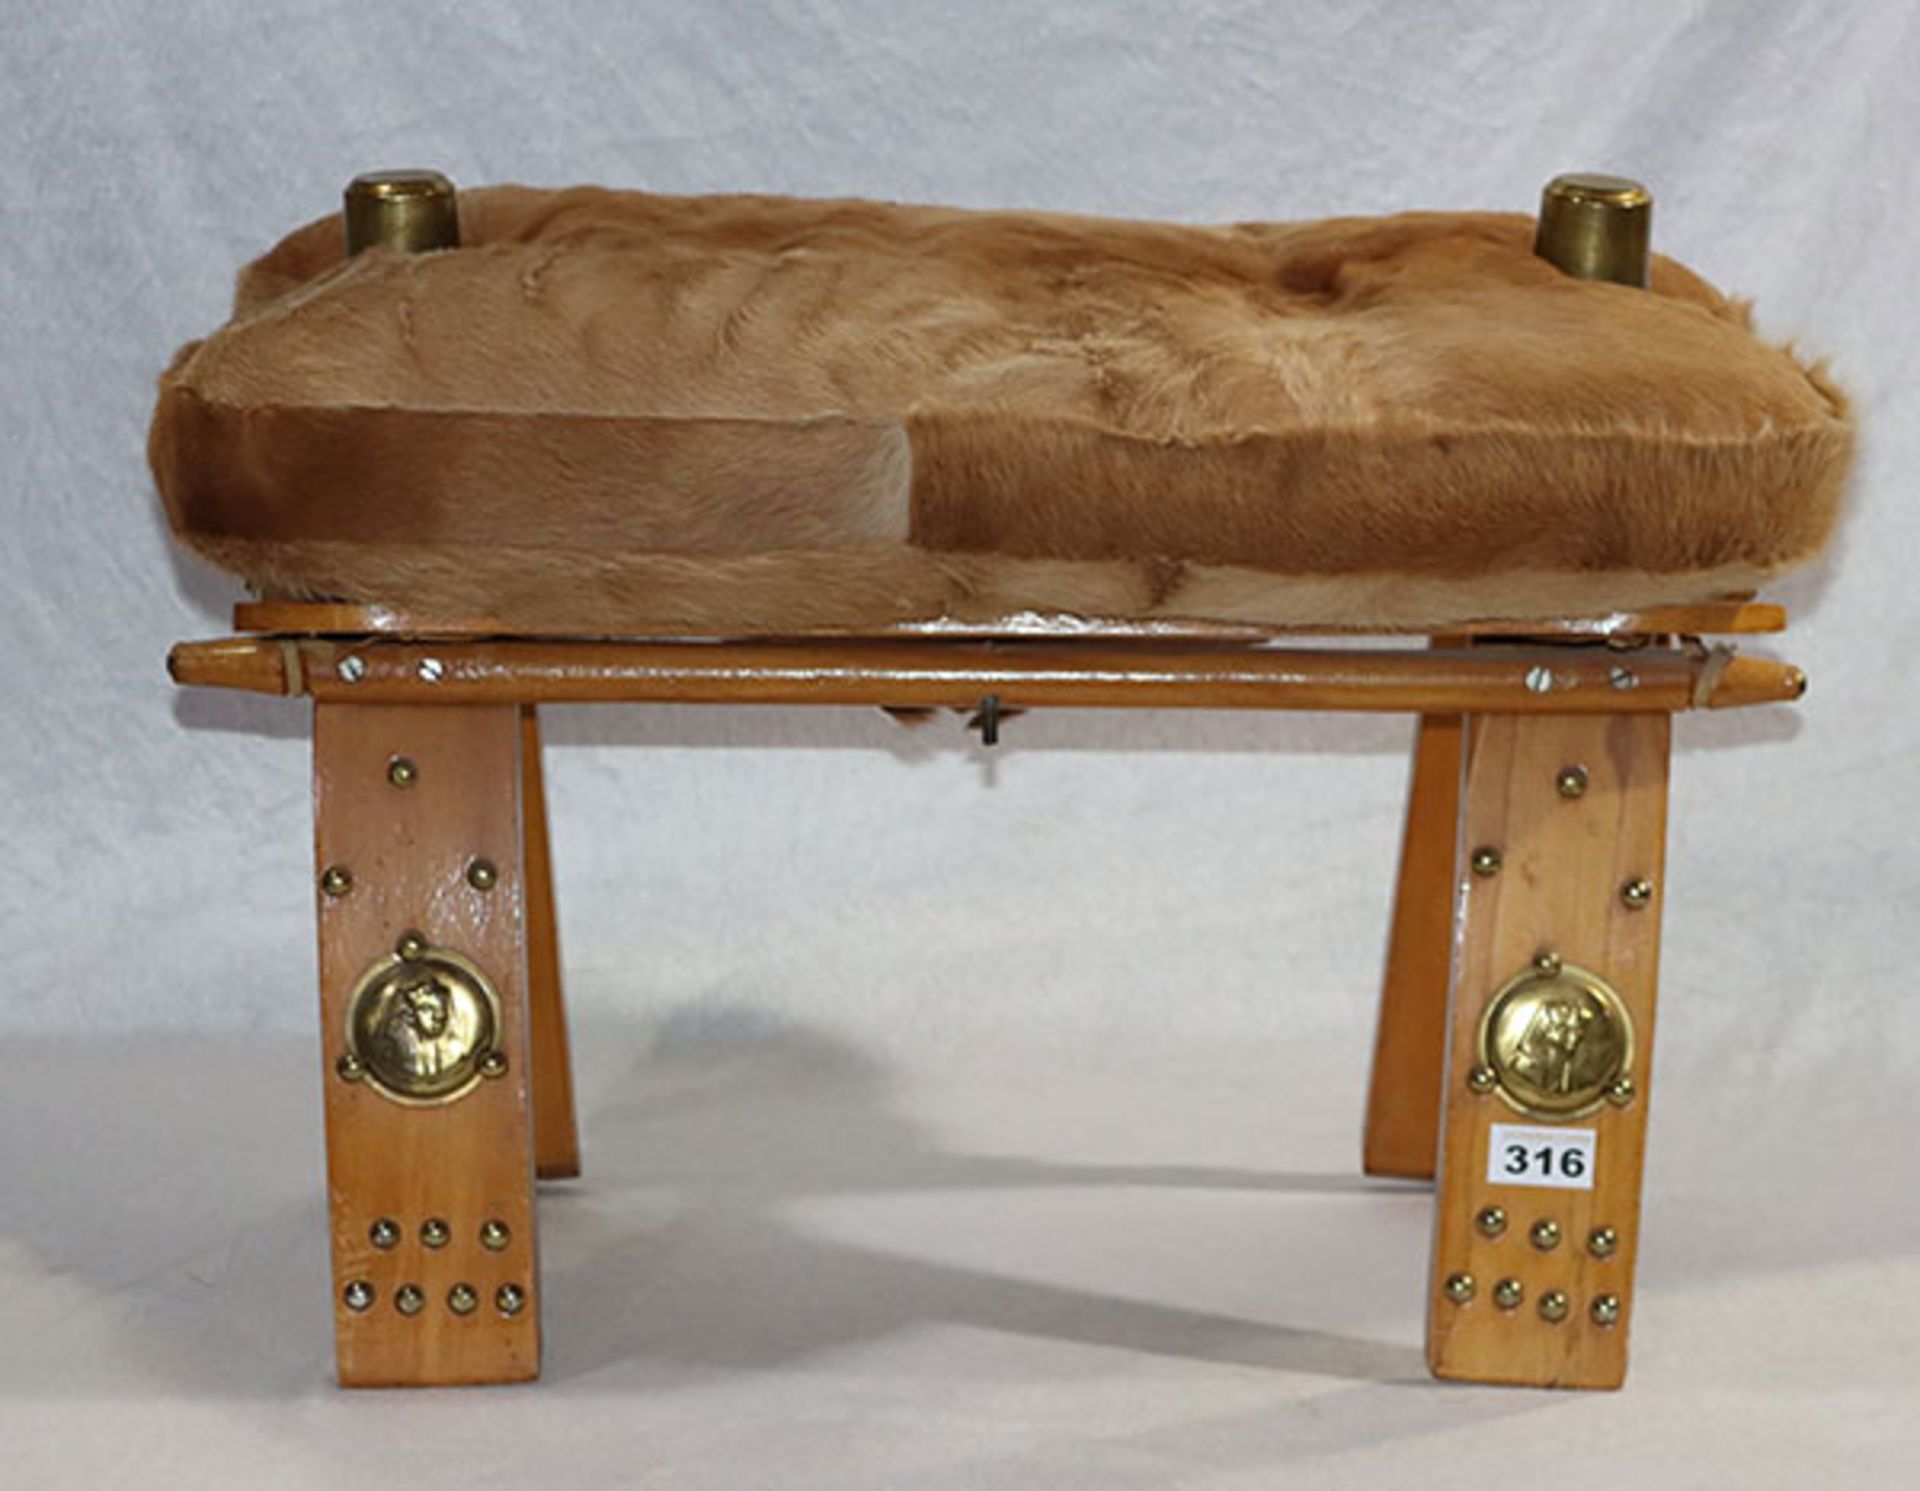 Holz Kamelhocker mit Fellkissen, Messingverzierungen, H 40 cm, L 60 cm, B 38 cm, Alters- und